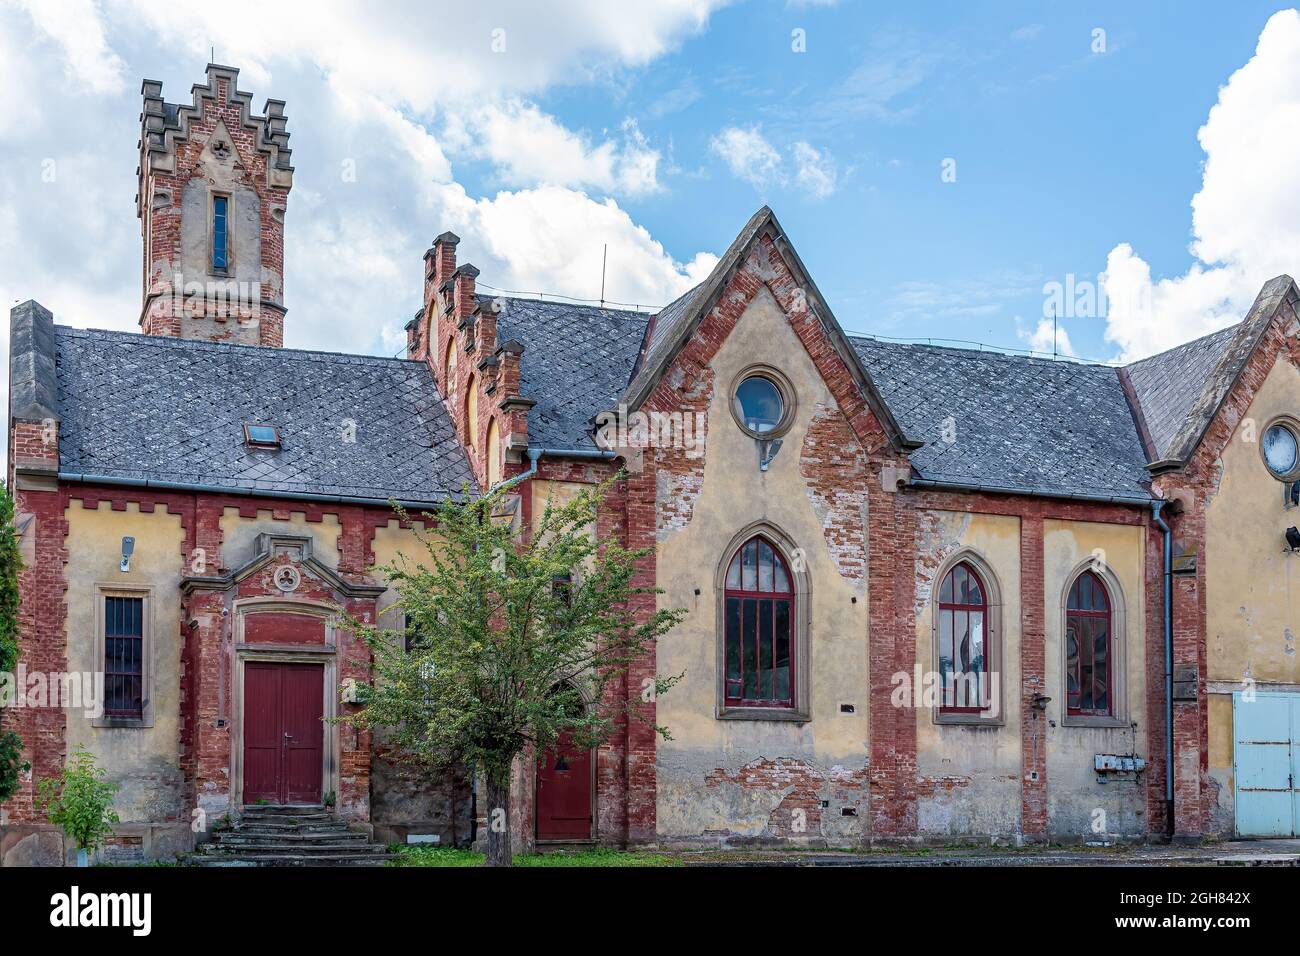 BZENEC, TSCHECHISCHE REPUBLIK - 19. Aug 2021: Eine szenische Aufnahme der linken Seite des Schlosses in der Weinstadt Bzenec Stockfoto